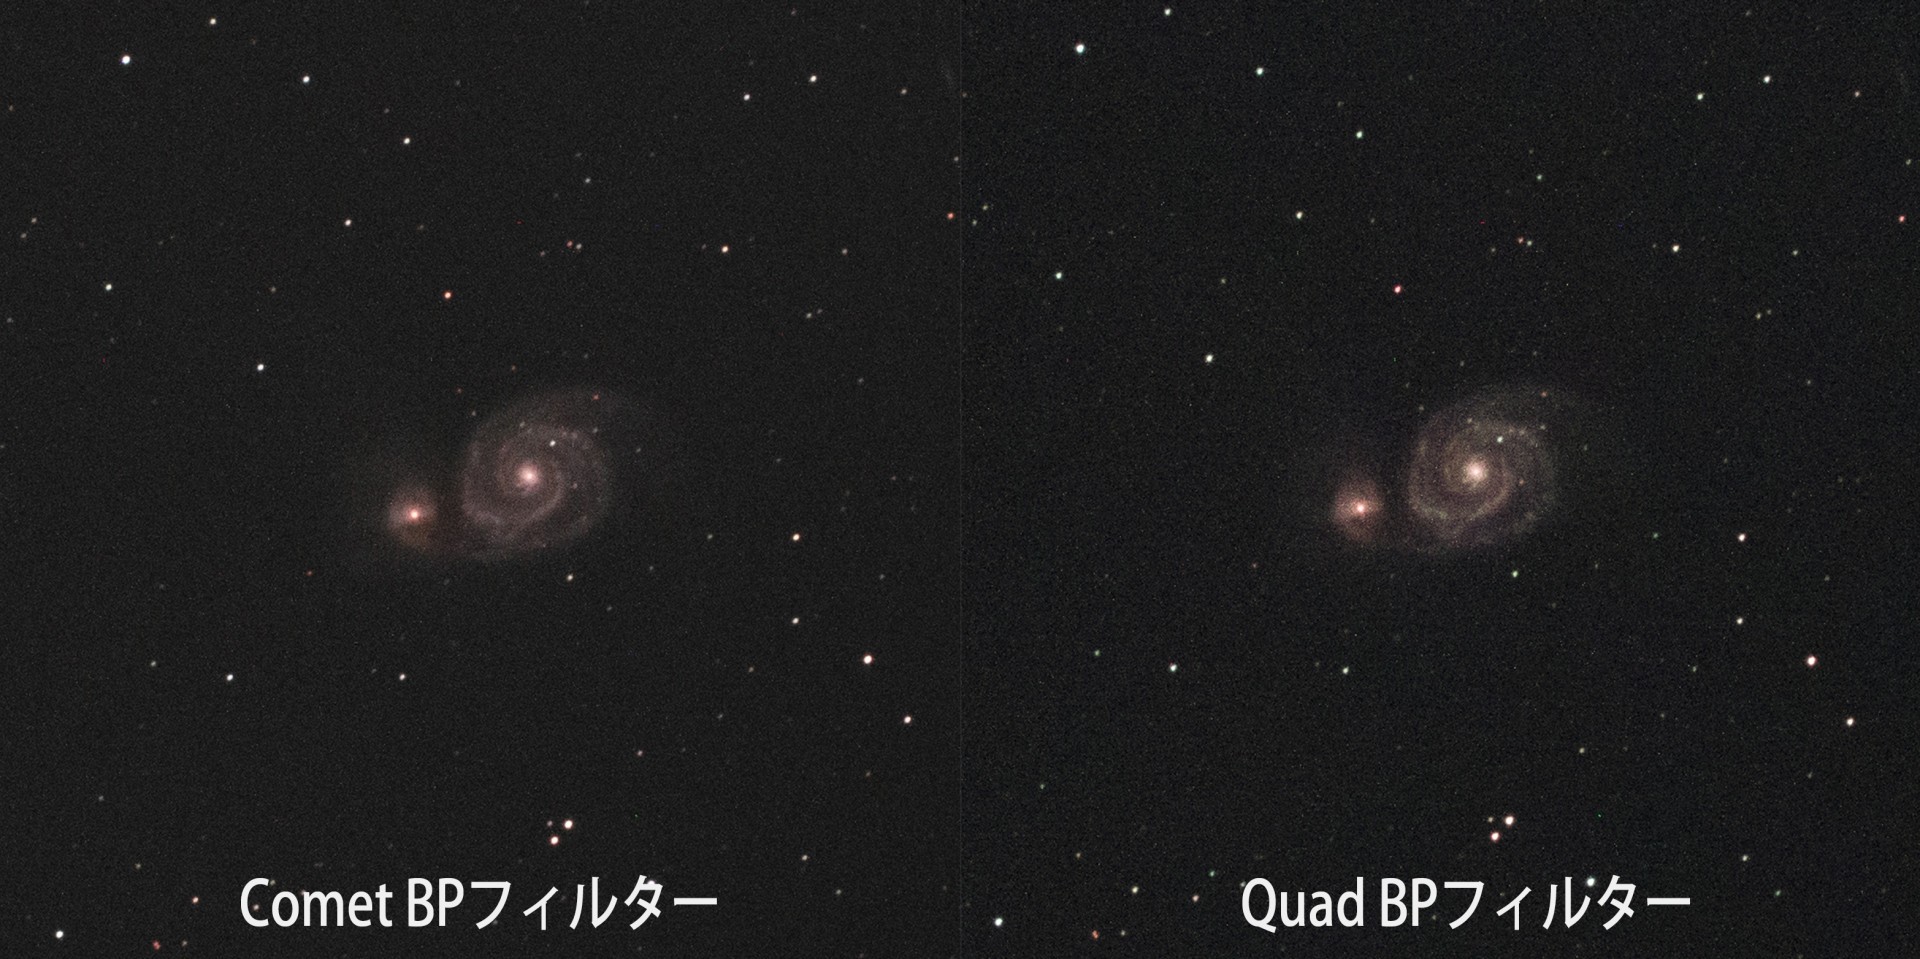 Sightron - Comet BP versus Quad BP